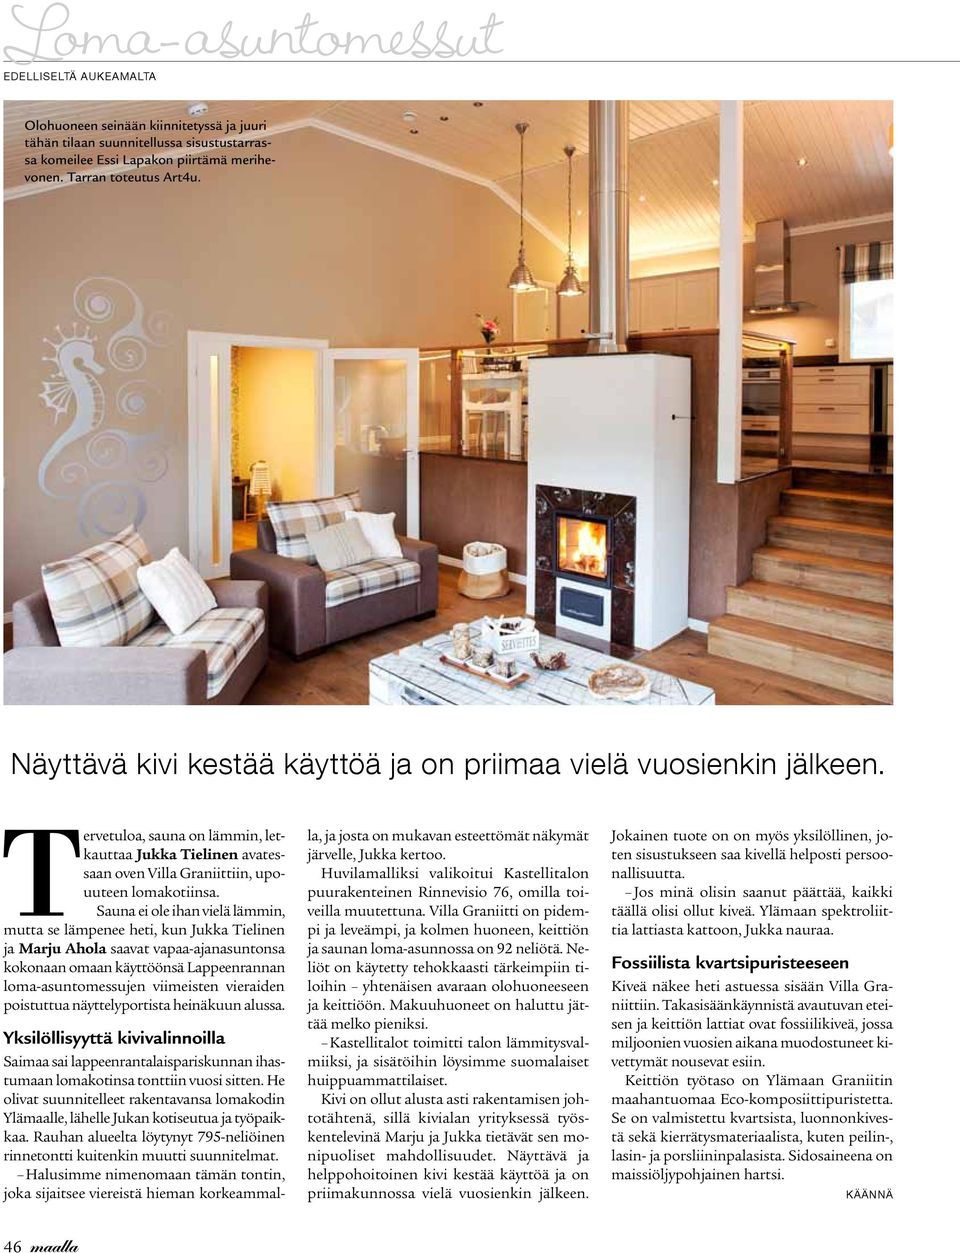 Sauna ei ole ihan vielä lämmin, mutta se lämpenee heti, kun Jukka Tielinen ja Marju Ahola saavat vapaa-ajanasuntonsa kokonaan omaan käyttöönsä Lappeenrannan loma-asuntomessujen viimeisten vieraiden